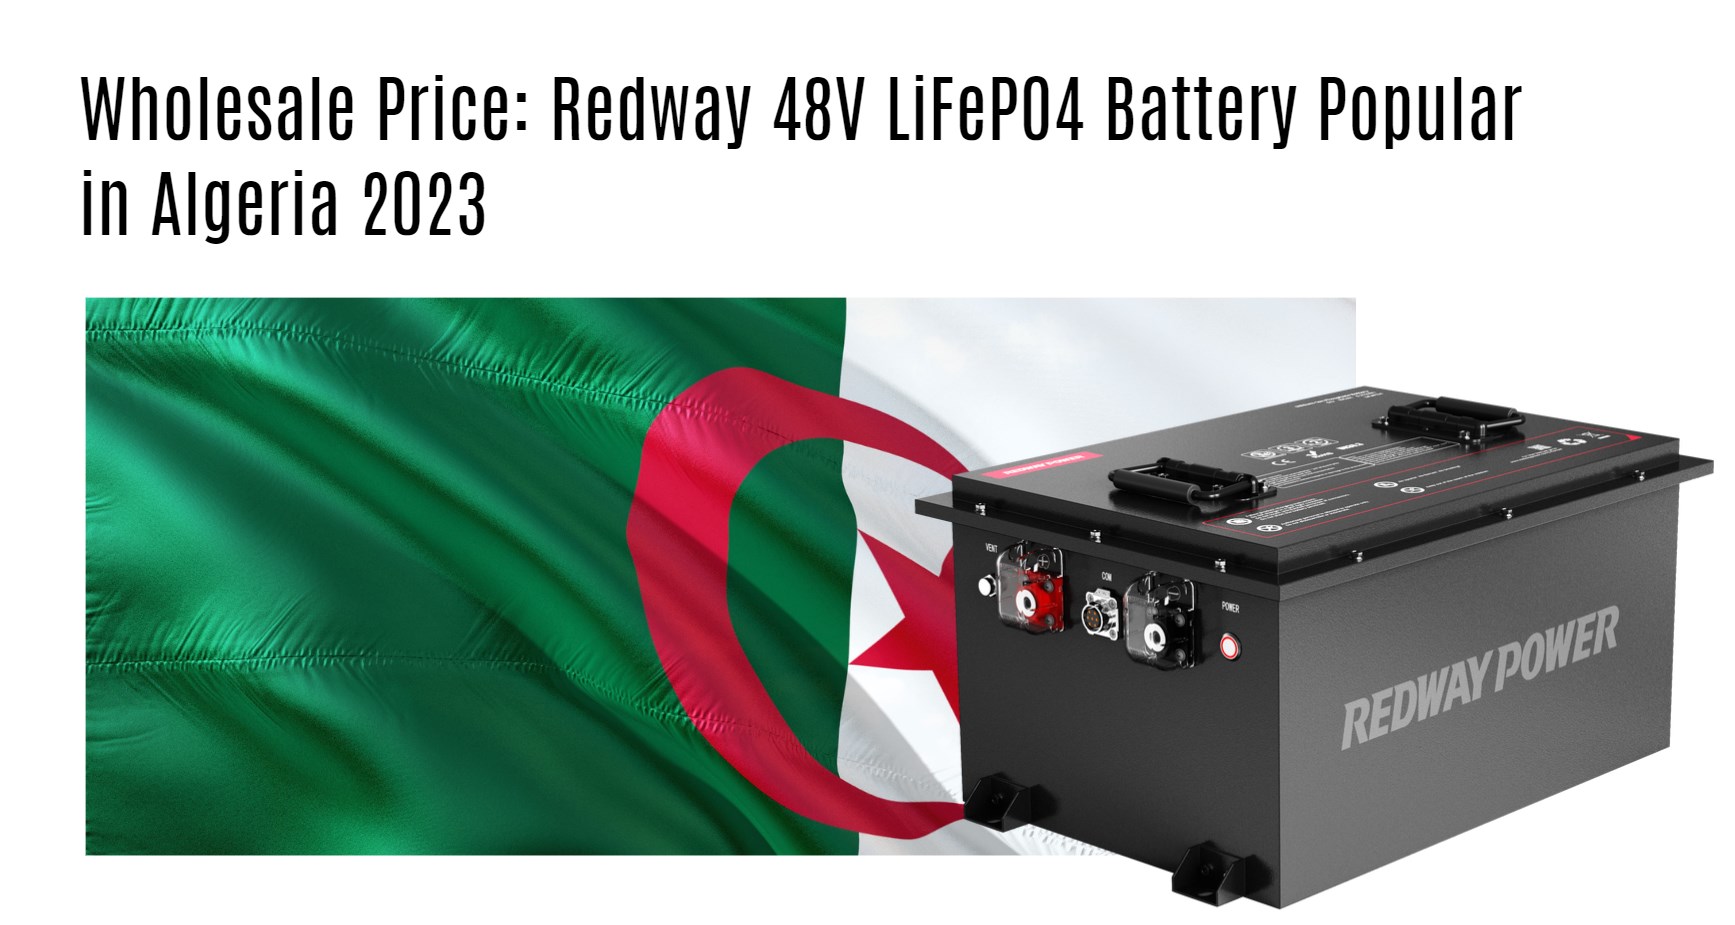 Redway 48V LiFePO4 Battery. Wholesale Price: Redway 48V LiFePO4 Battery Popular in Algeria 2023